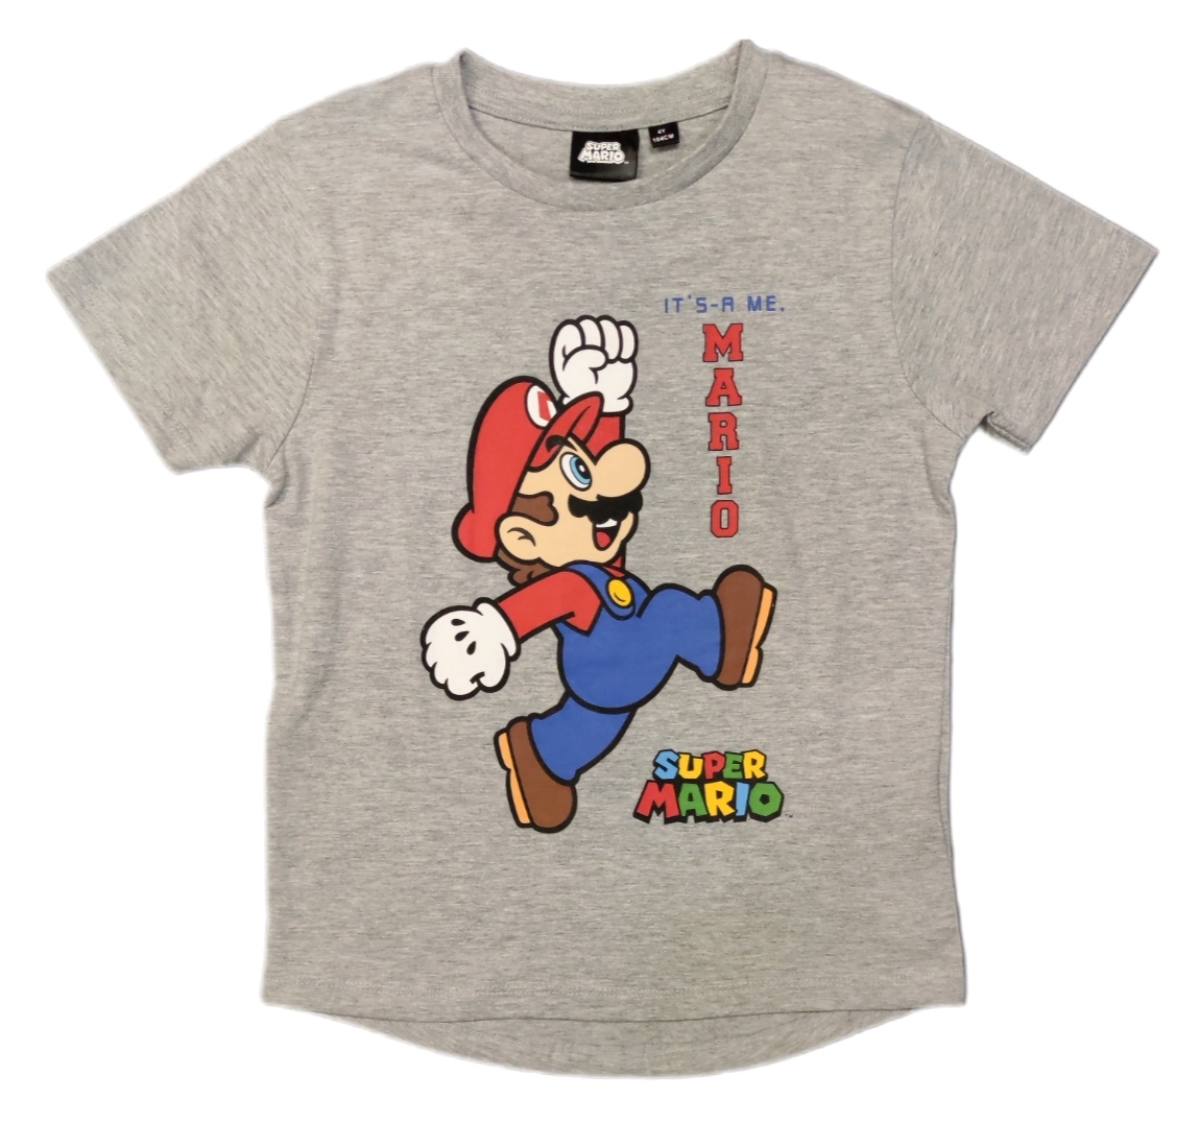 Super Marion T-Shirt in Grau mit Mario in Laufpose und dem Schriftzug "Its me Mario"